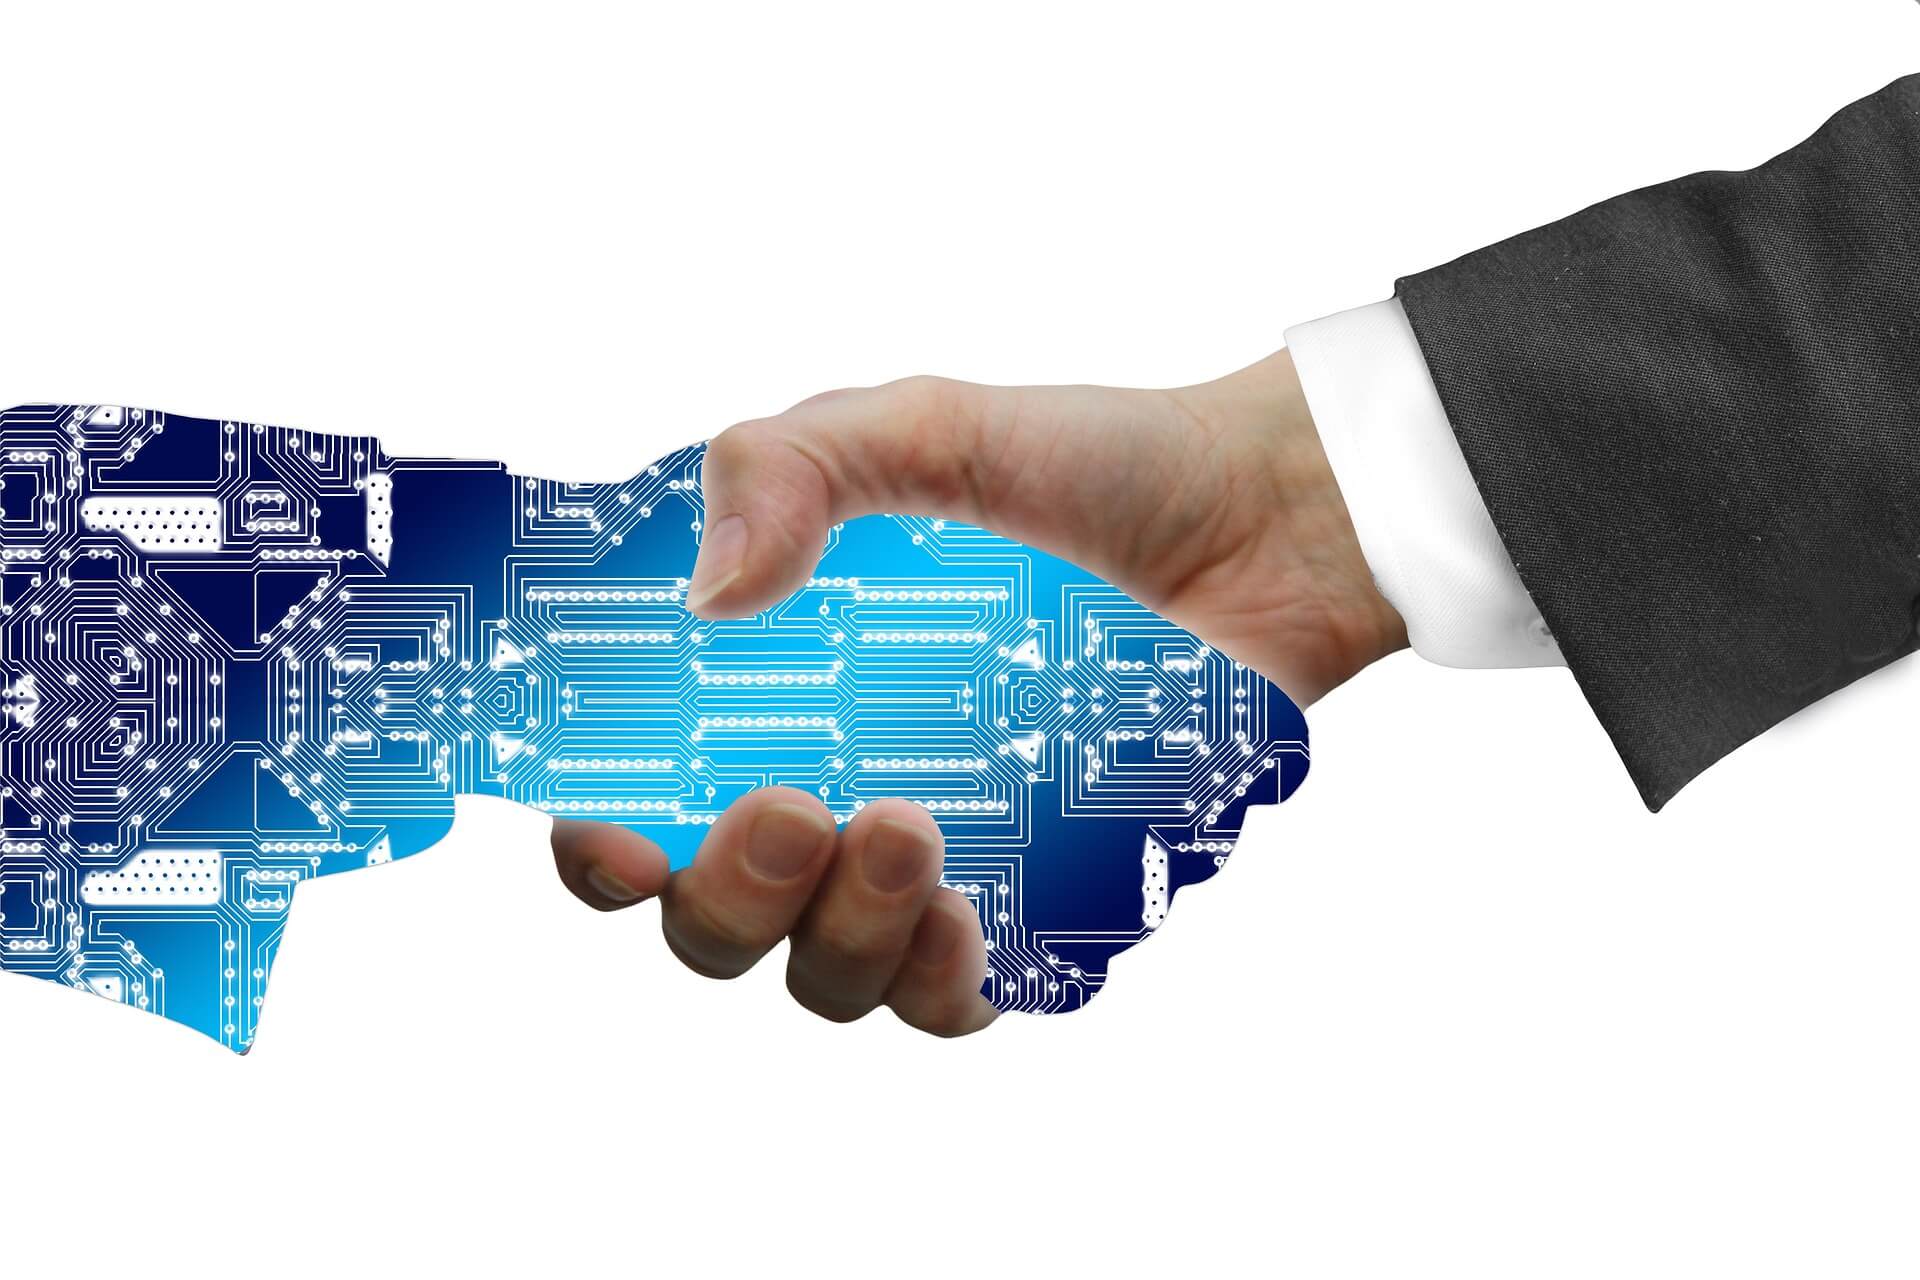 这是一张握手的图片，一只手是人类的，穿着西装；另一只手呈现为蓝色电路板图案，代表科技或人工智能。